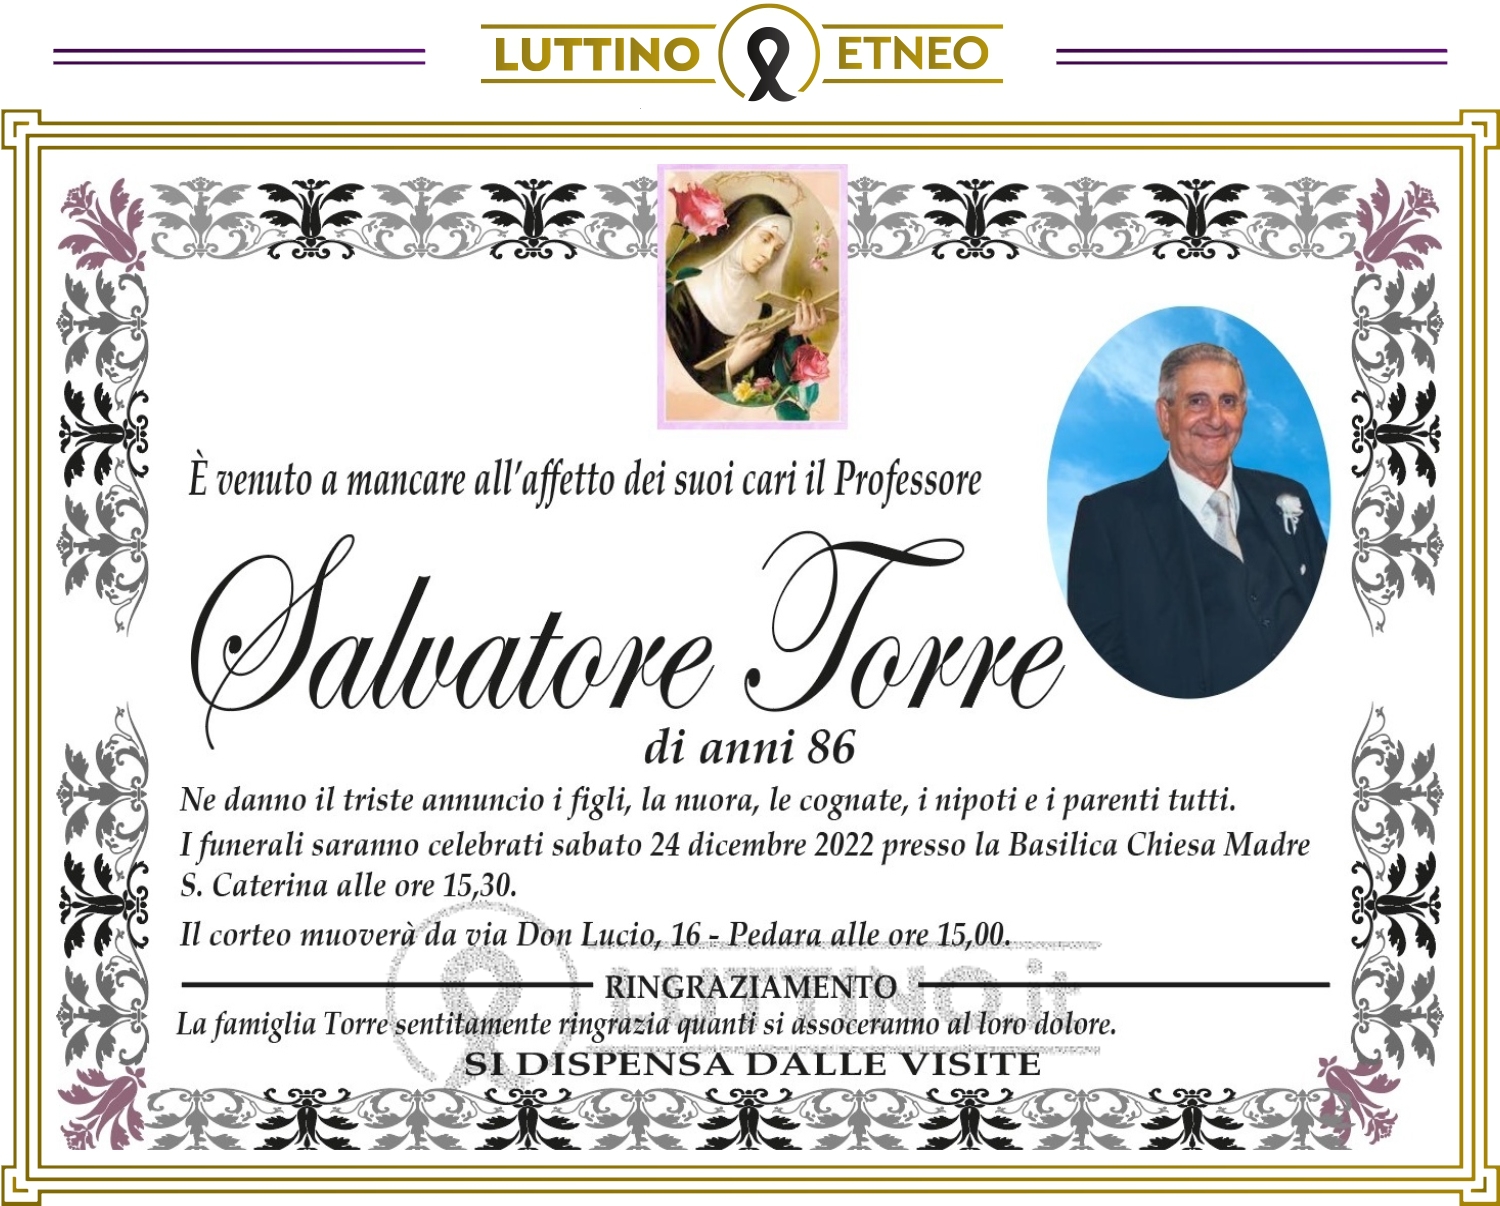 Salvatore Torre